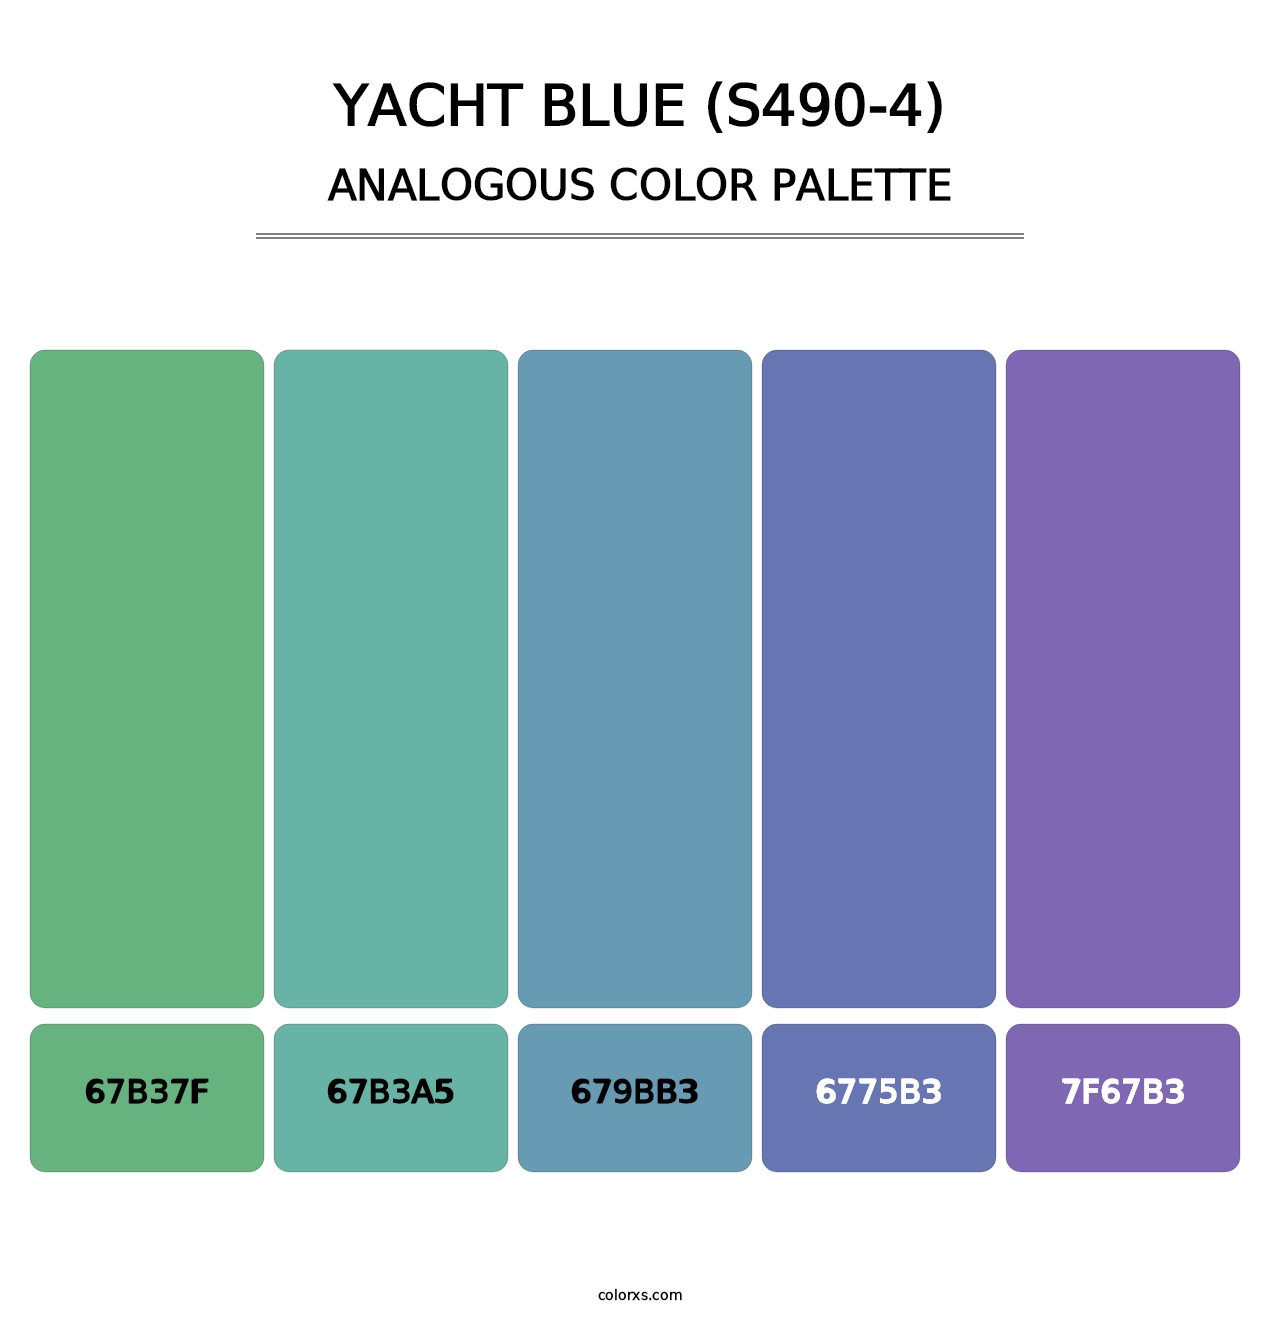 Yacht Blue (S490-4) - Analogous Color Palette